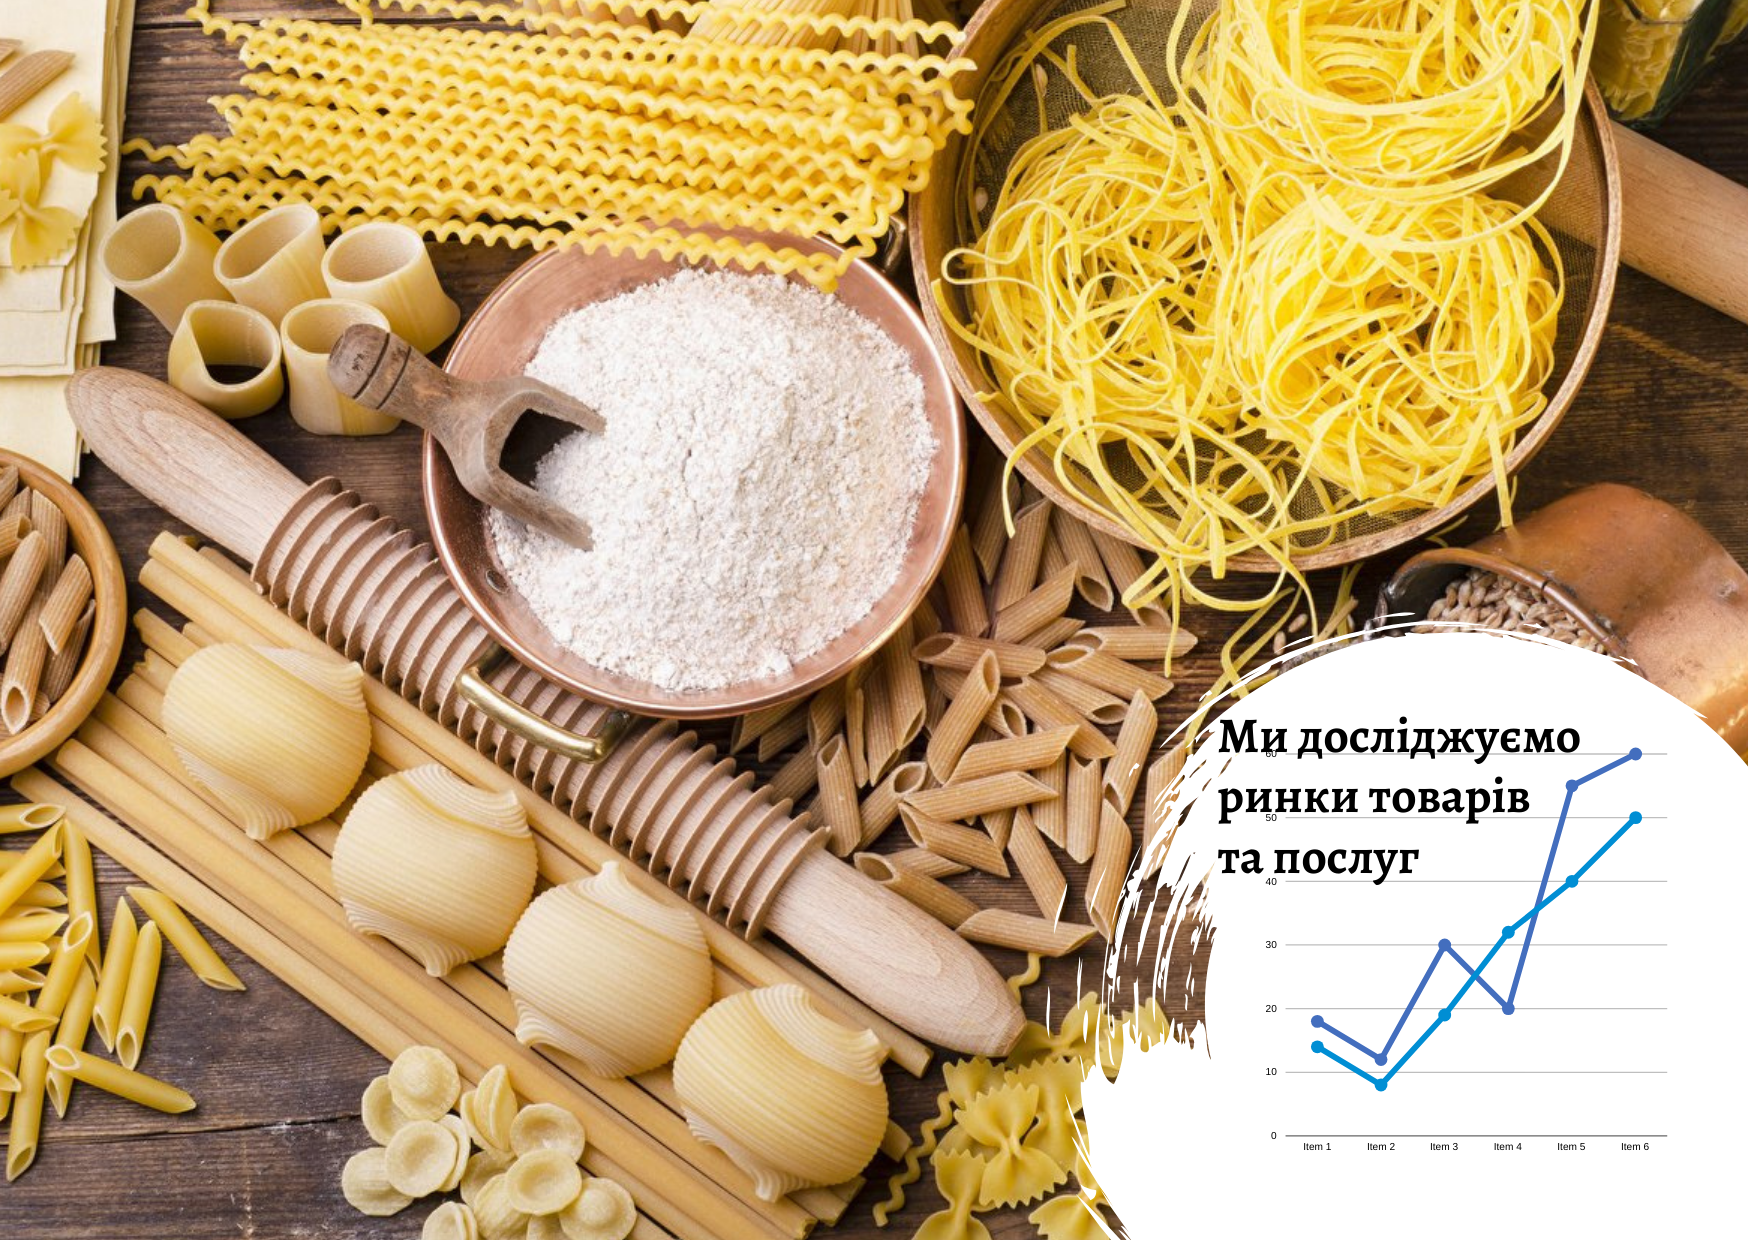 Ukrainian grocery market: factors and development trends 